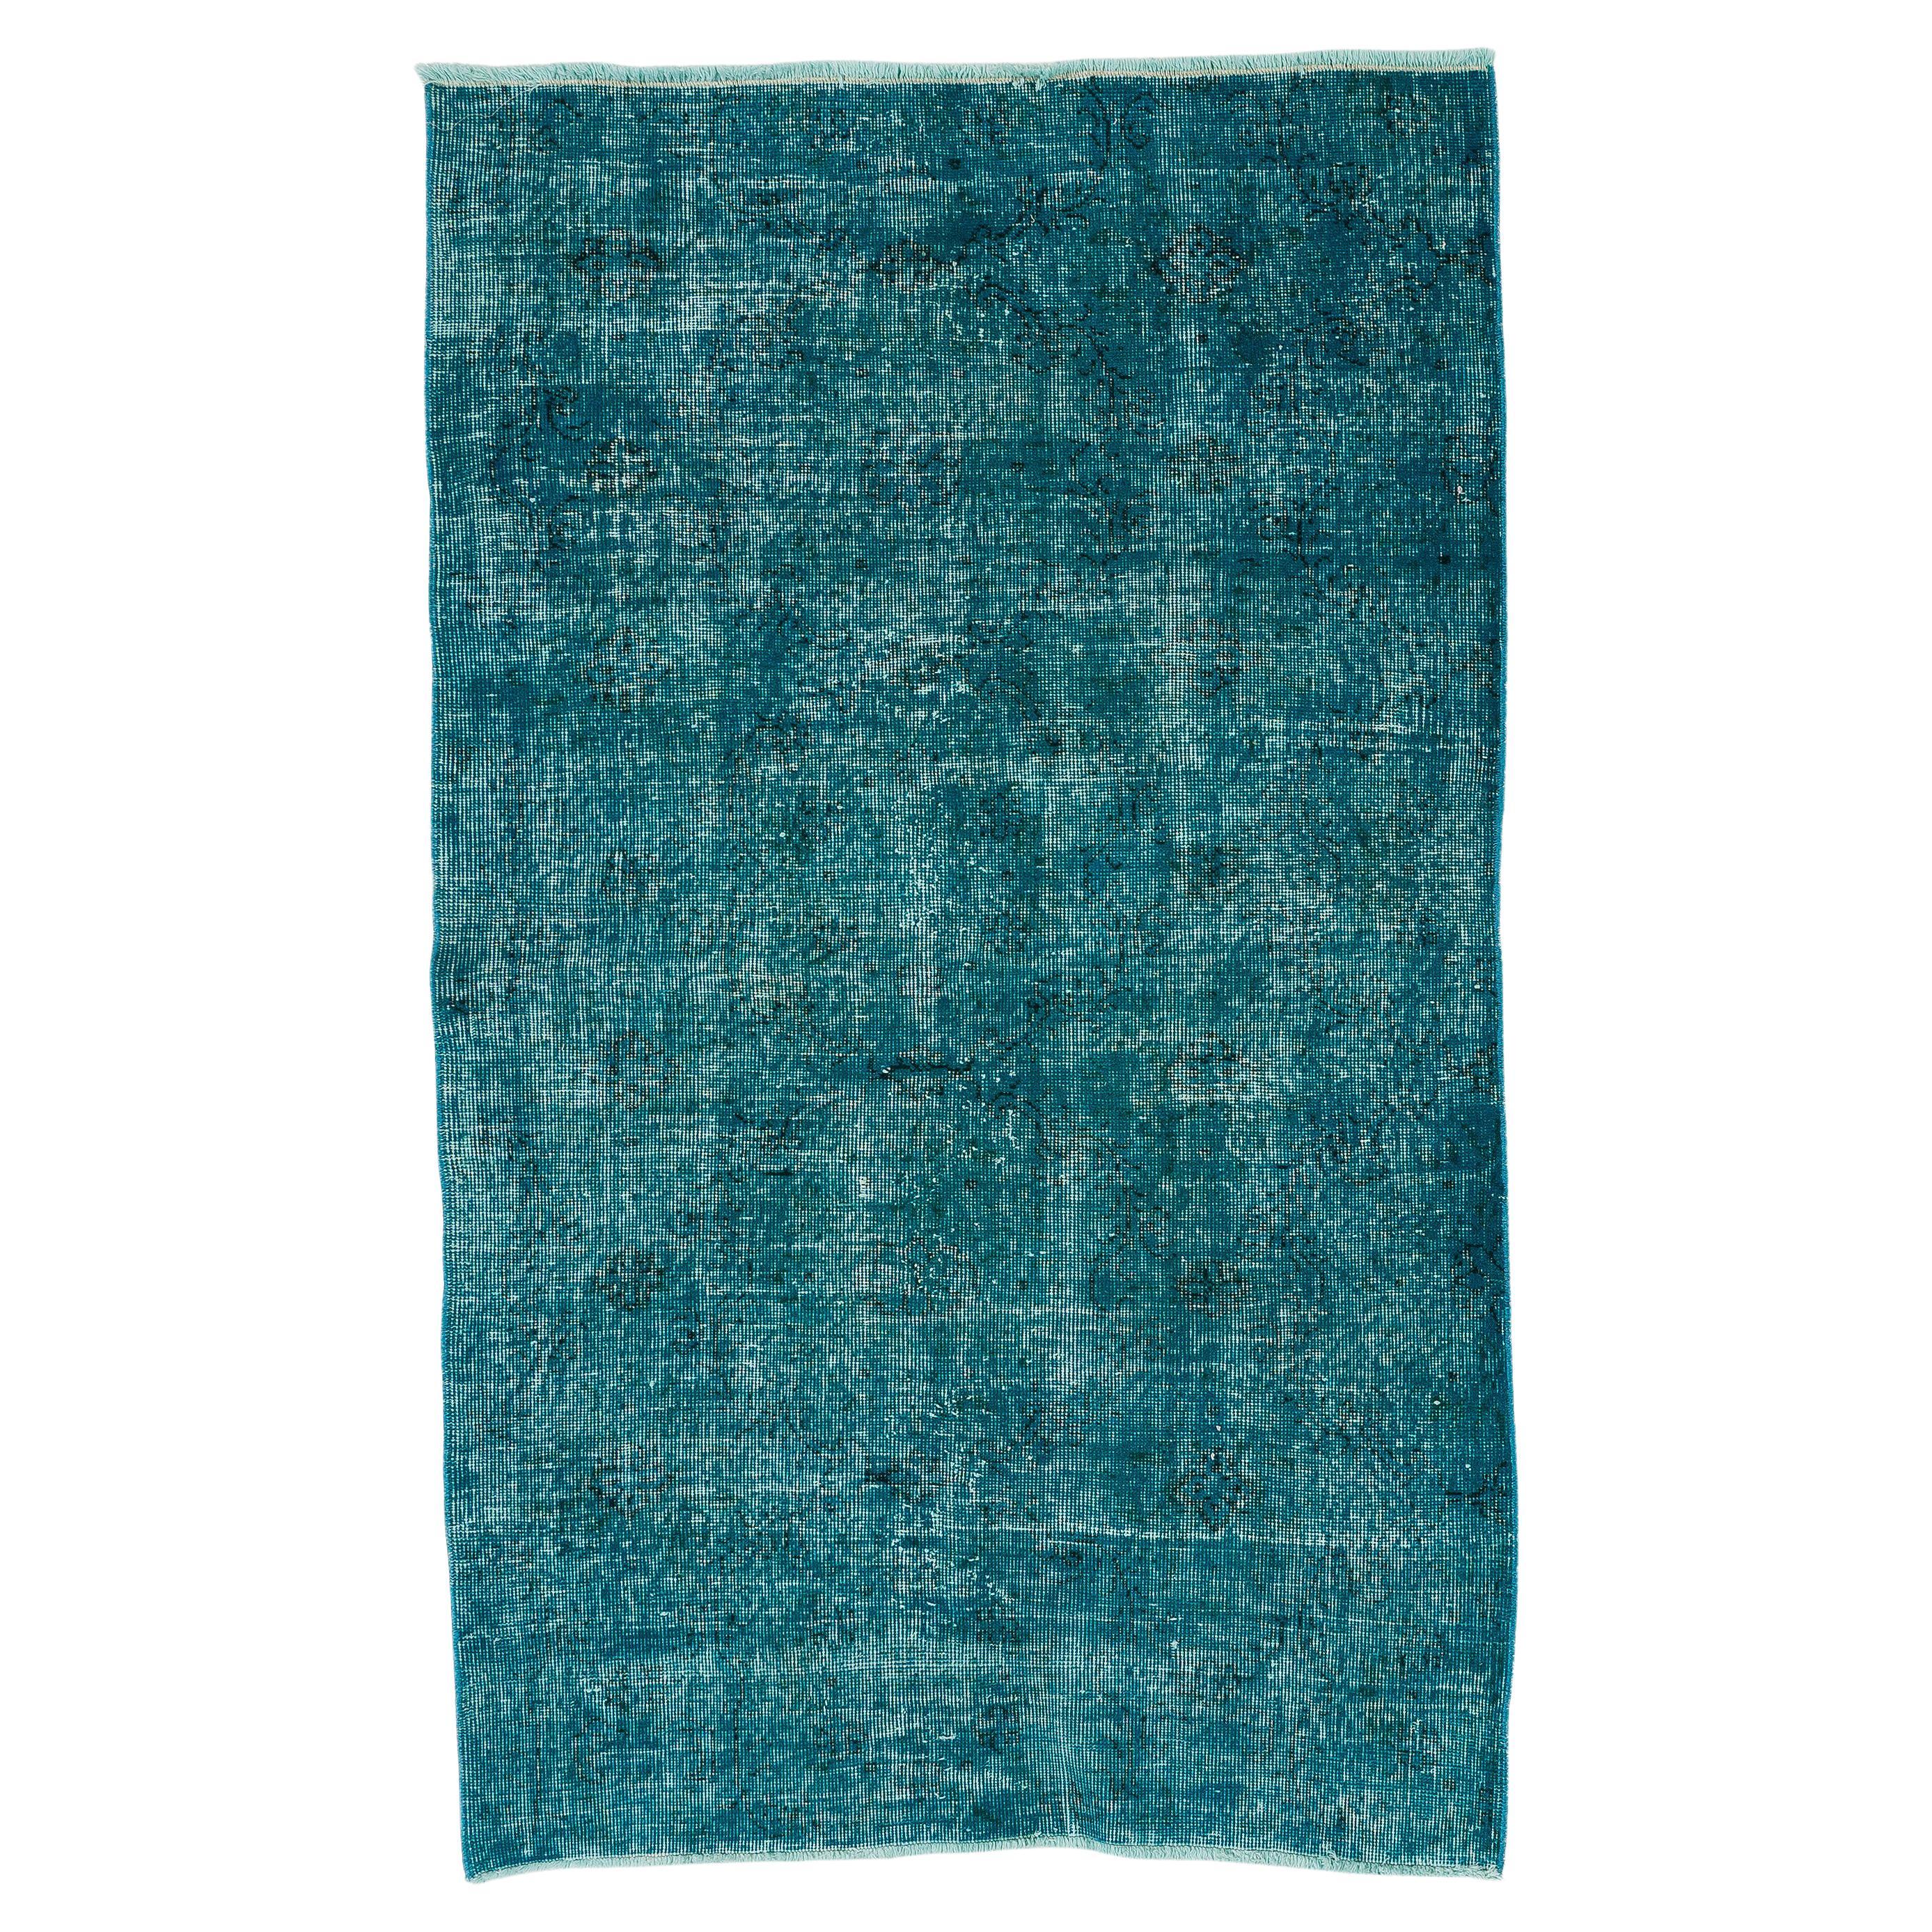 3.8x6.2 Fuß Vintage Handgefertigter türkischer Akzentte-Teppich in Teal Blau für Modern Interiors